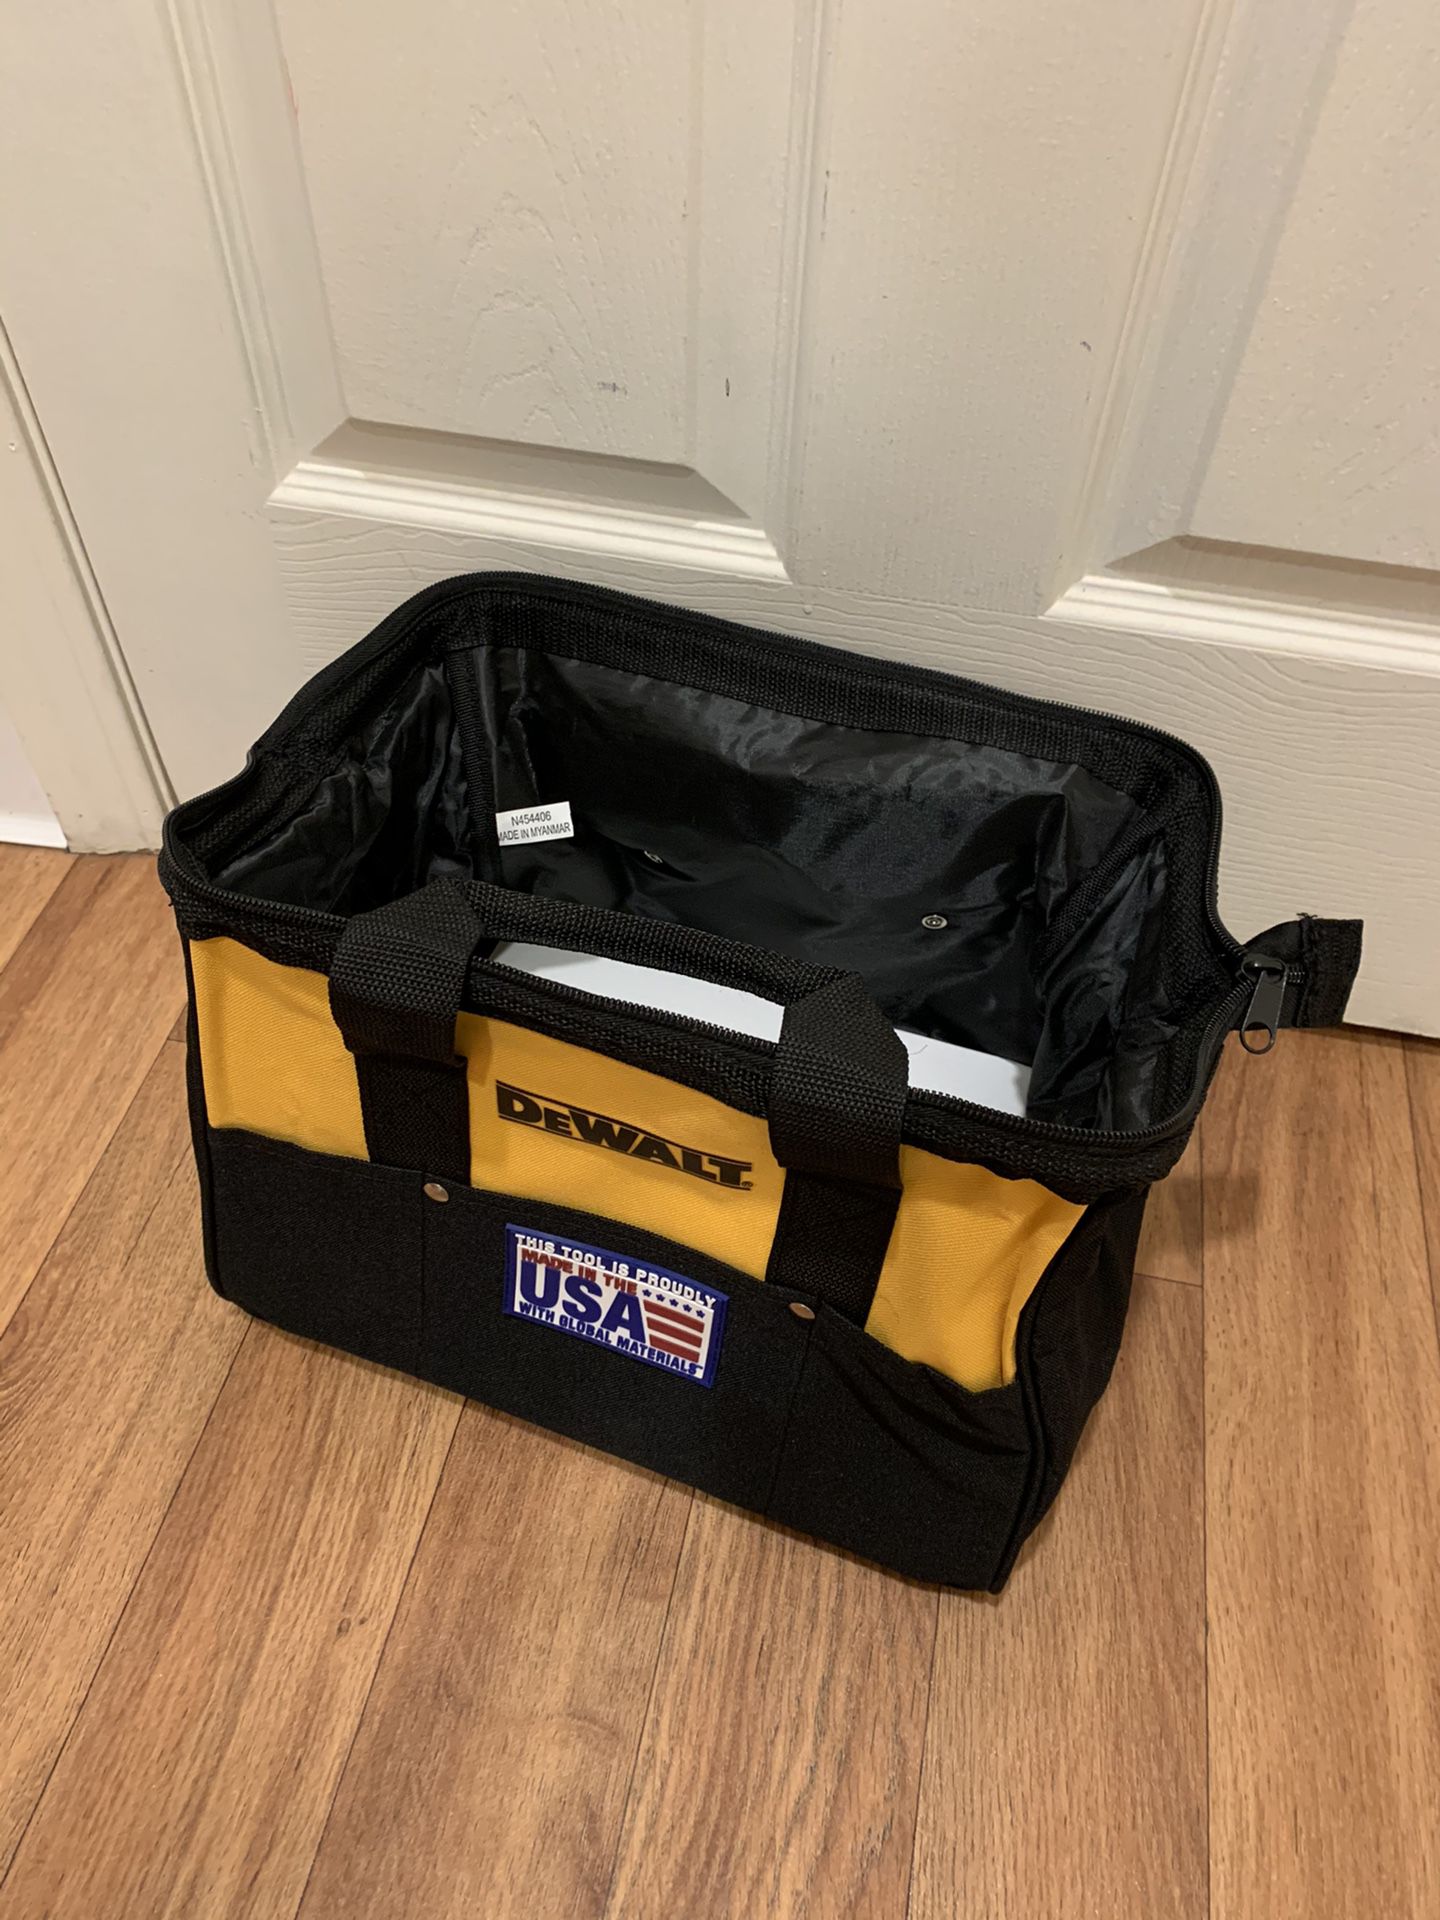 Dewalt tool bag. 13”L 91/2”W 91/2”H. $20 firm